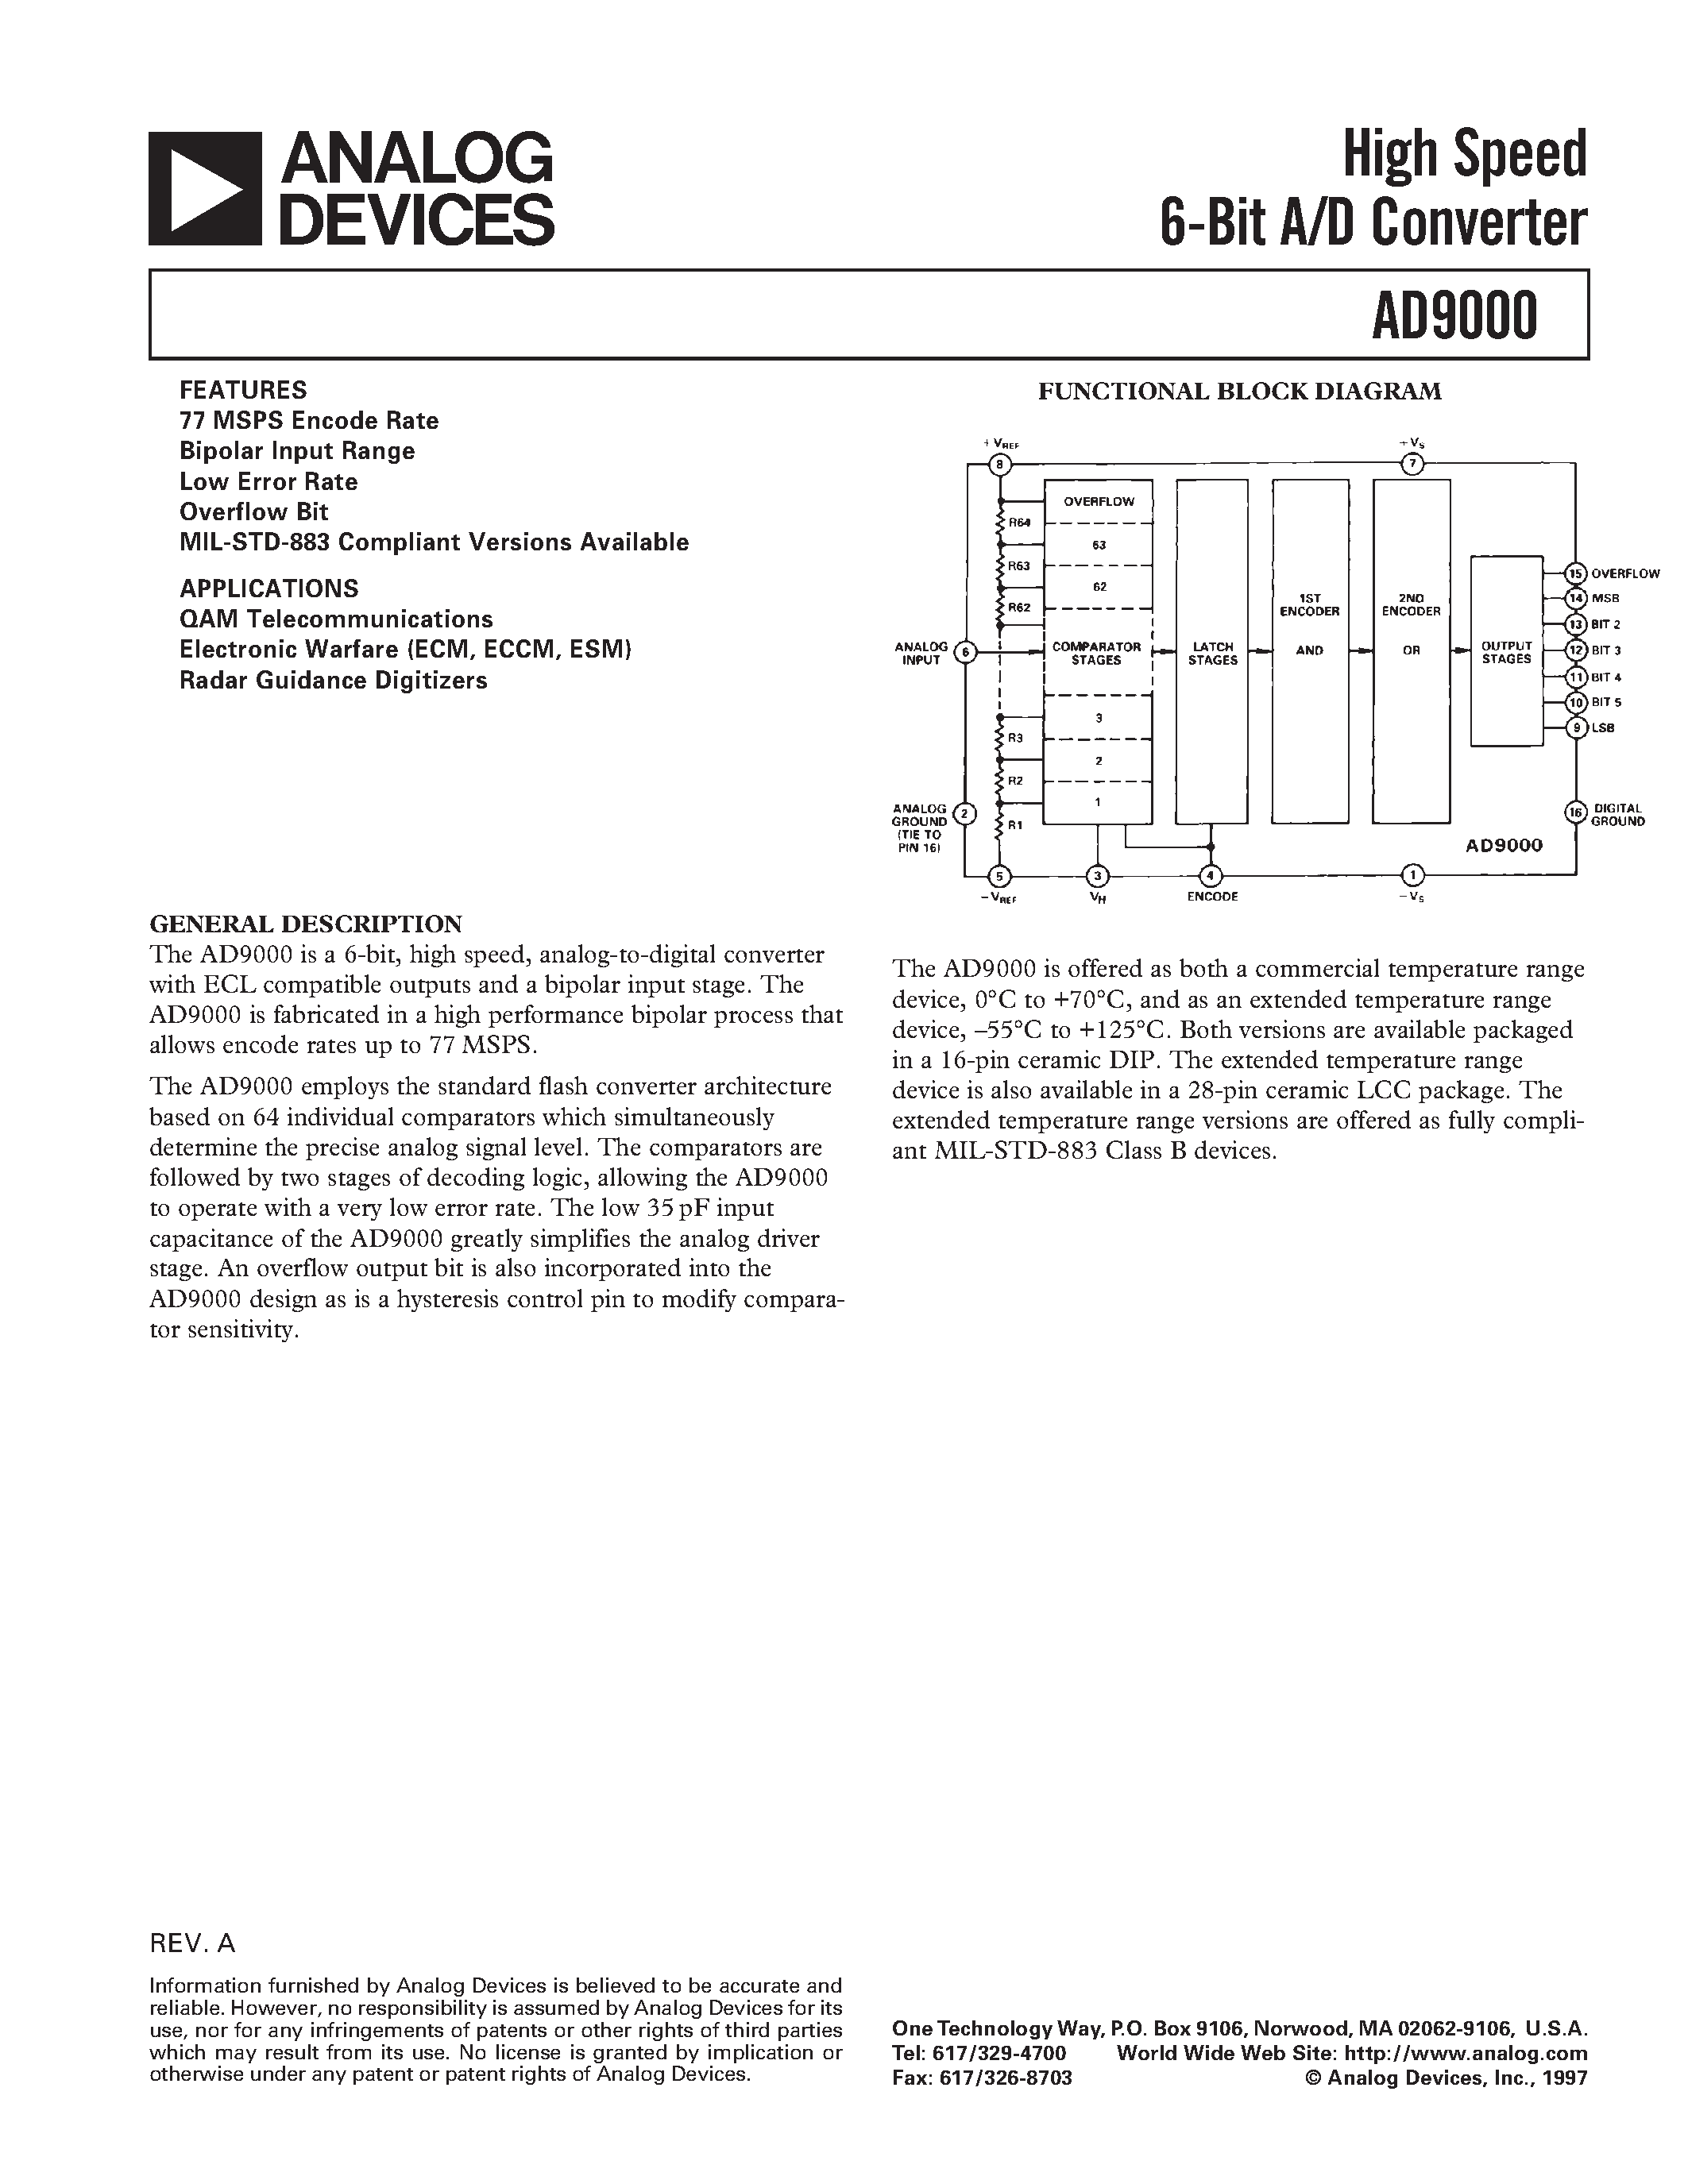 Даташит AD9000SD - High Speed 6-Bit A/D Converter страница 1